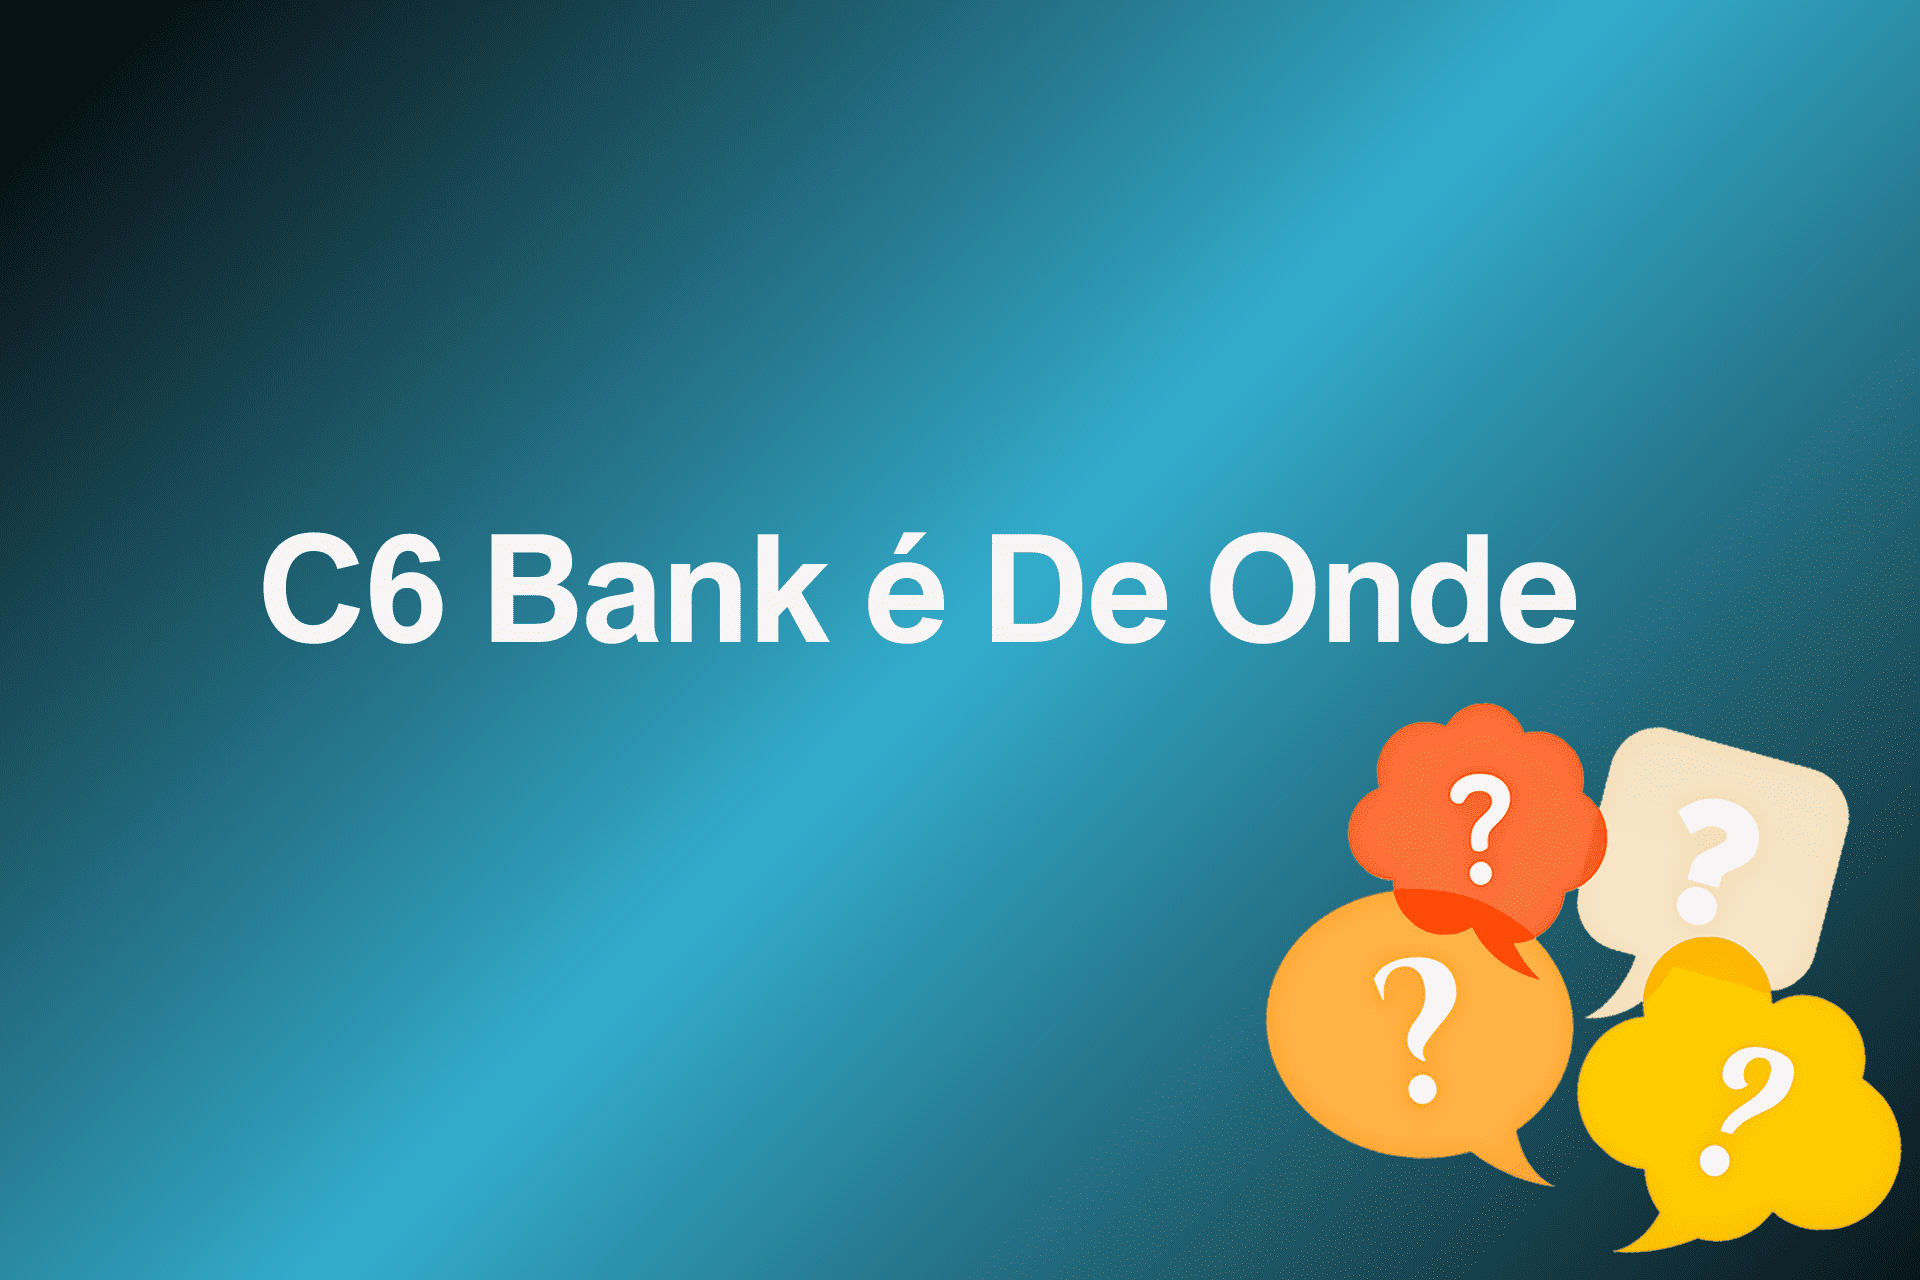 C6 Bank é De Onde?